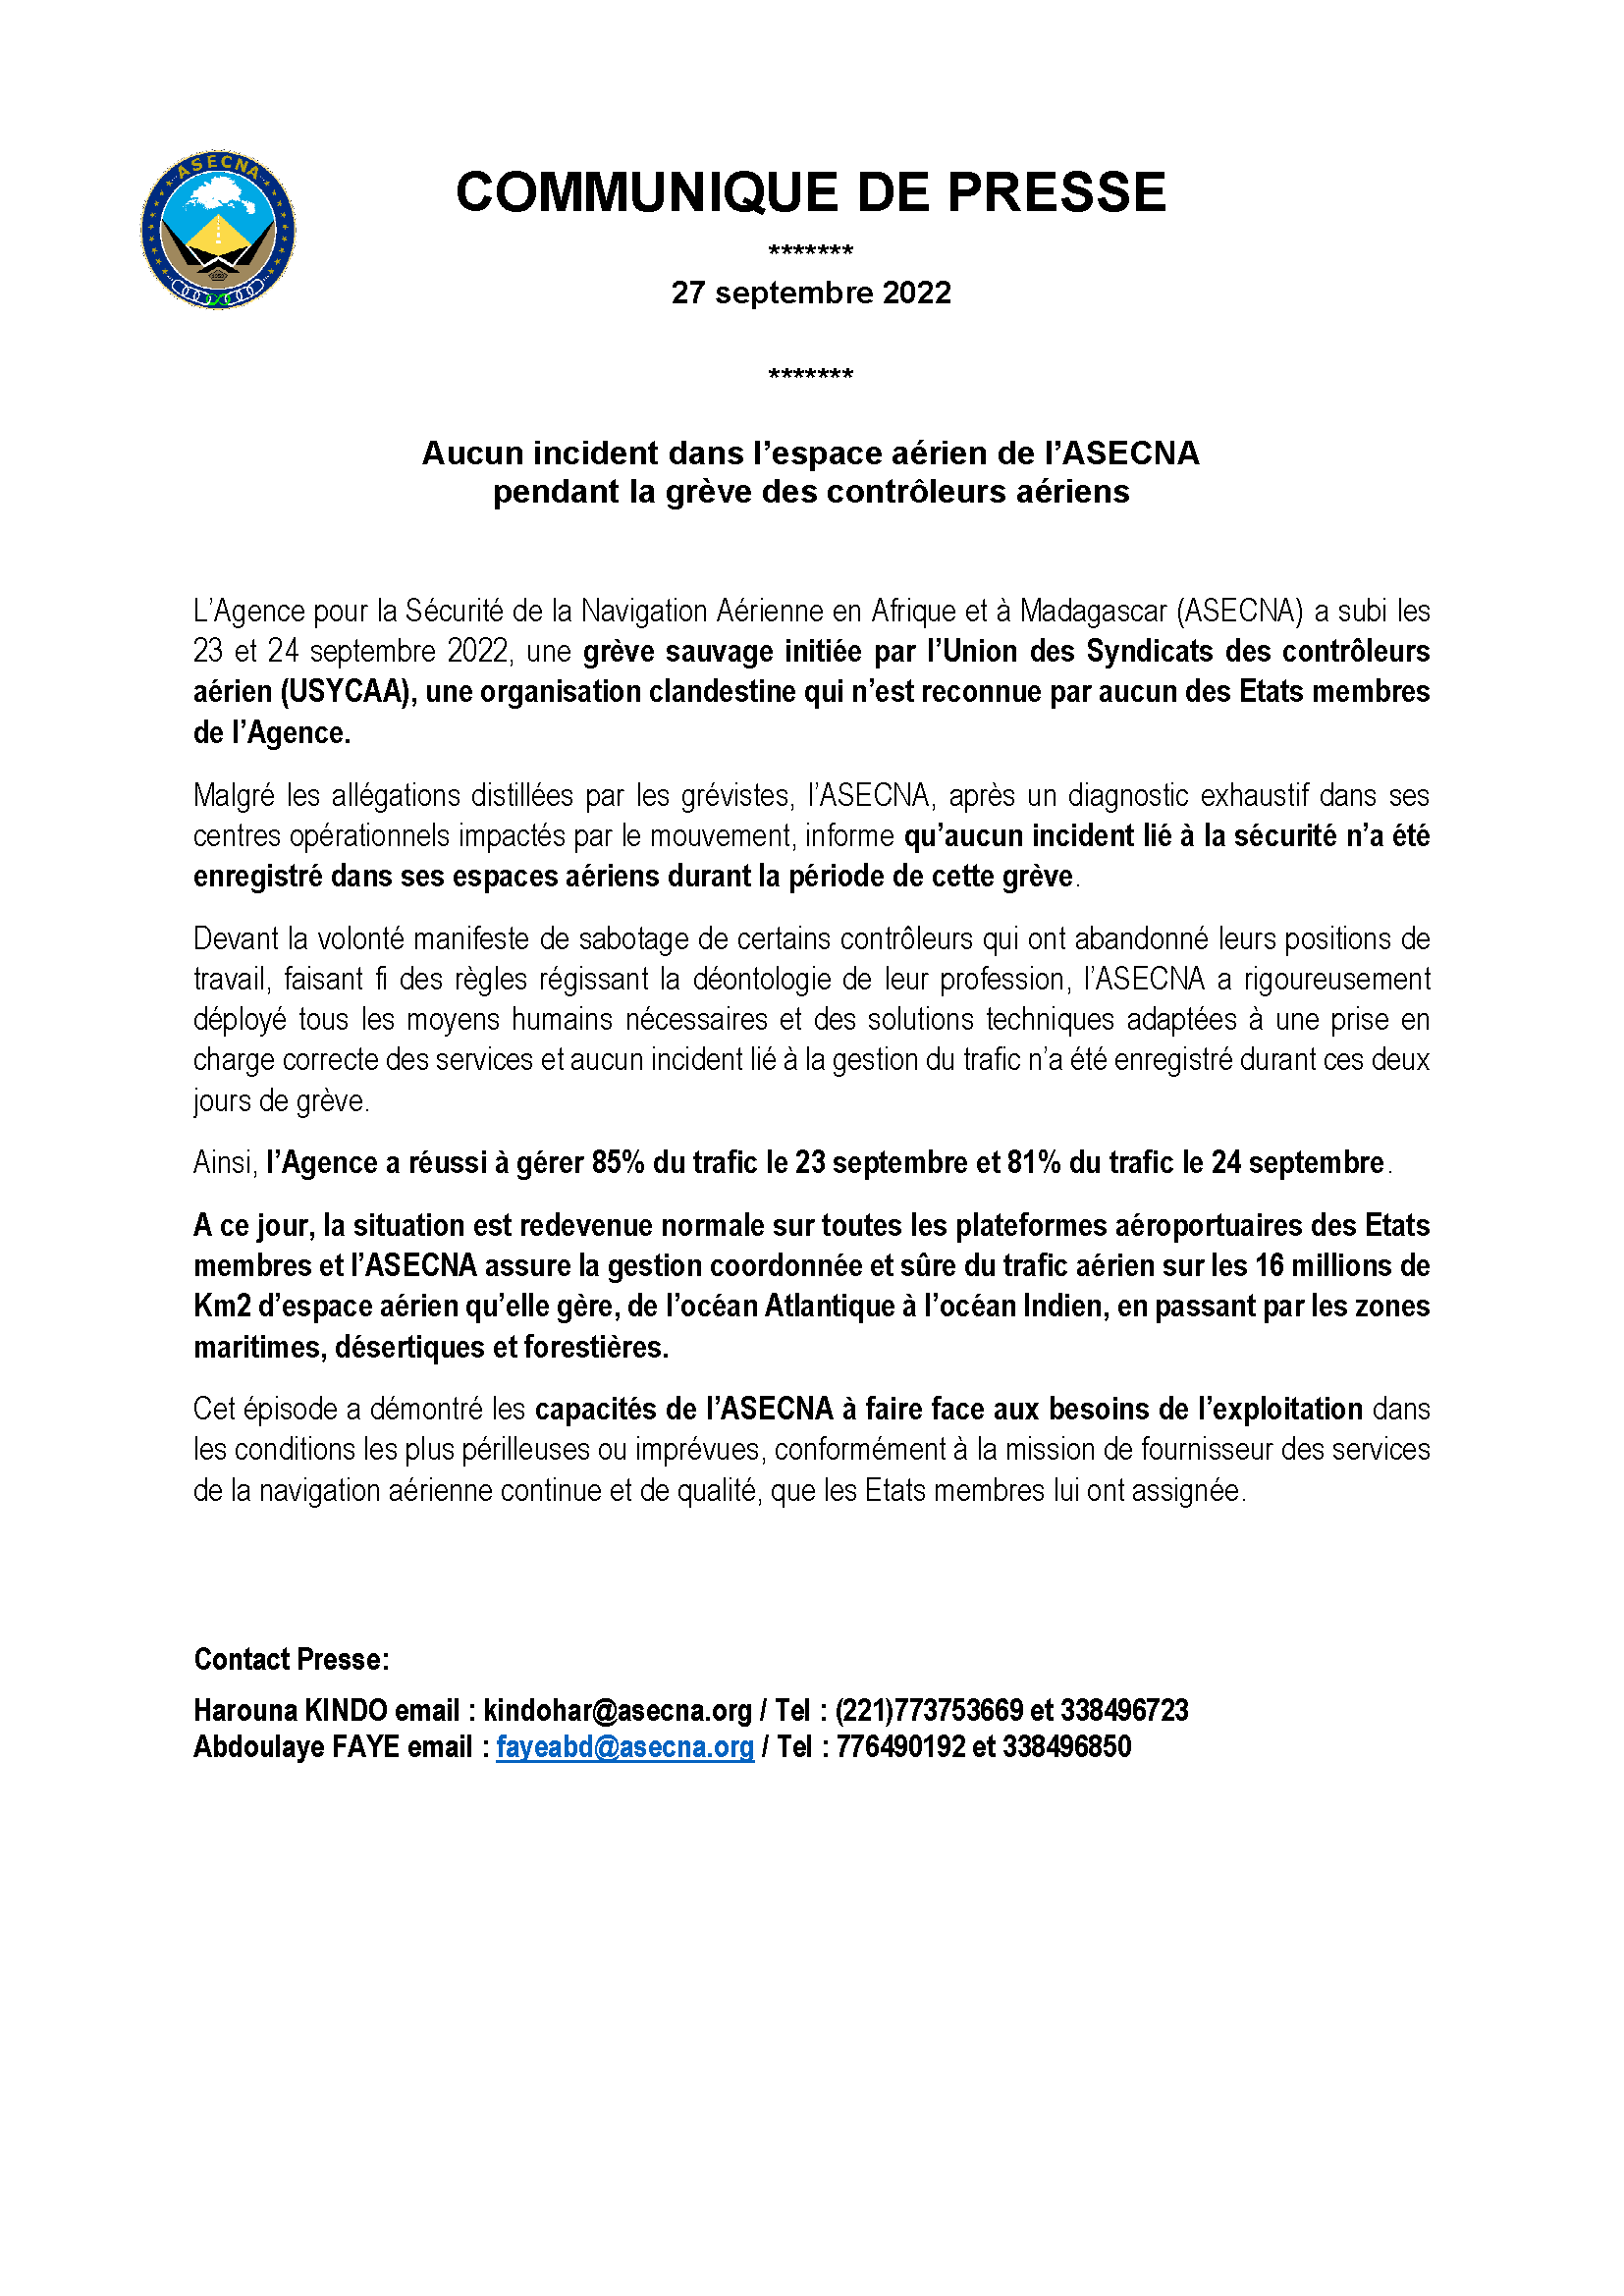 communique de presse Aucun incident dans l’espace aérien de l’ASECNA pendant la grève des contrôleurs aériens